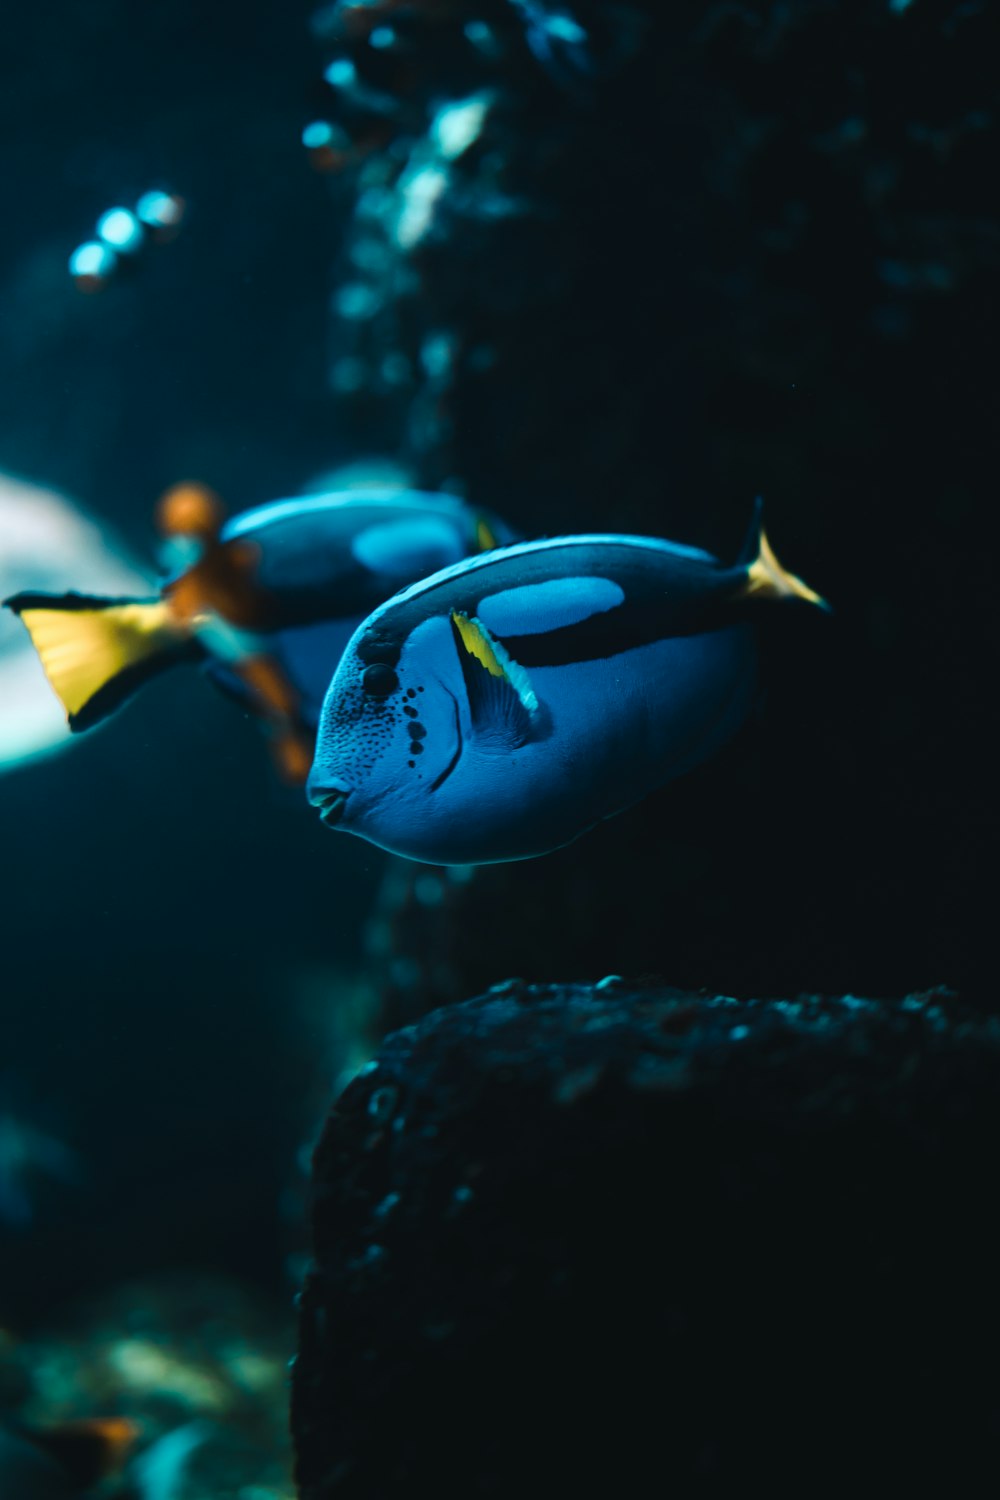 Un par de peces azules nadando en un acuario